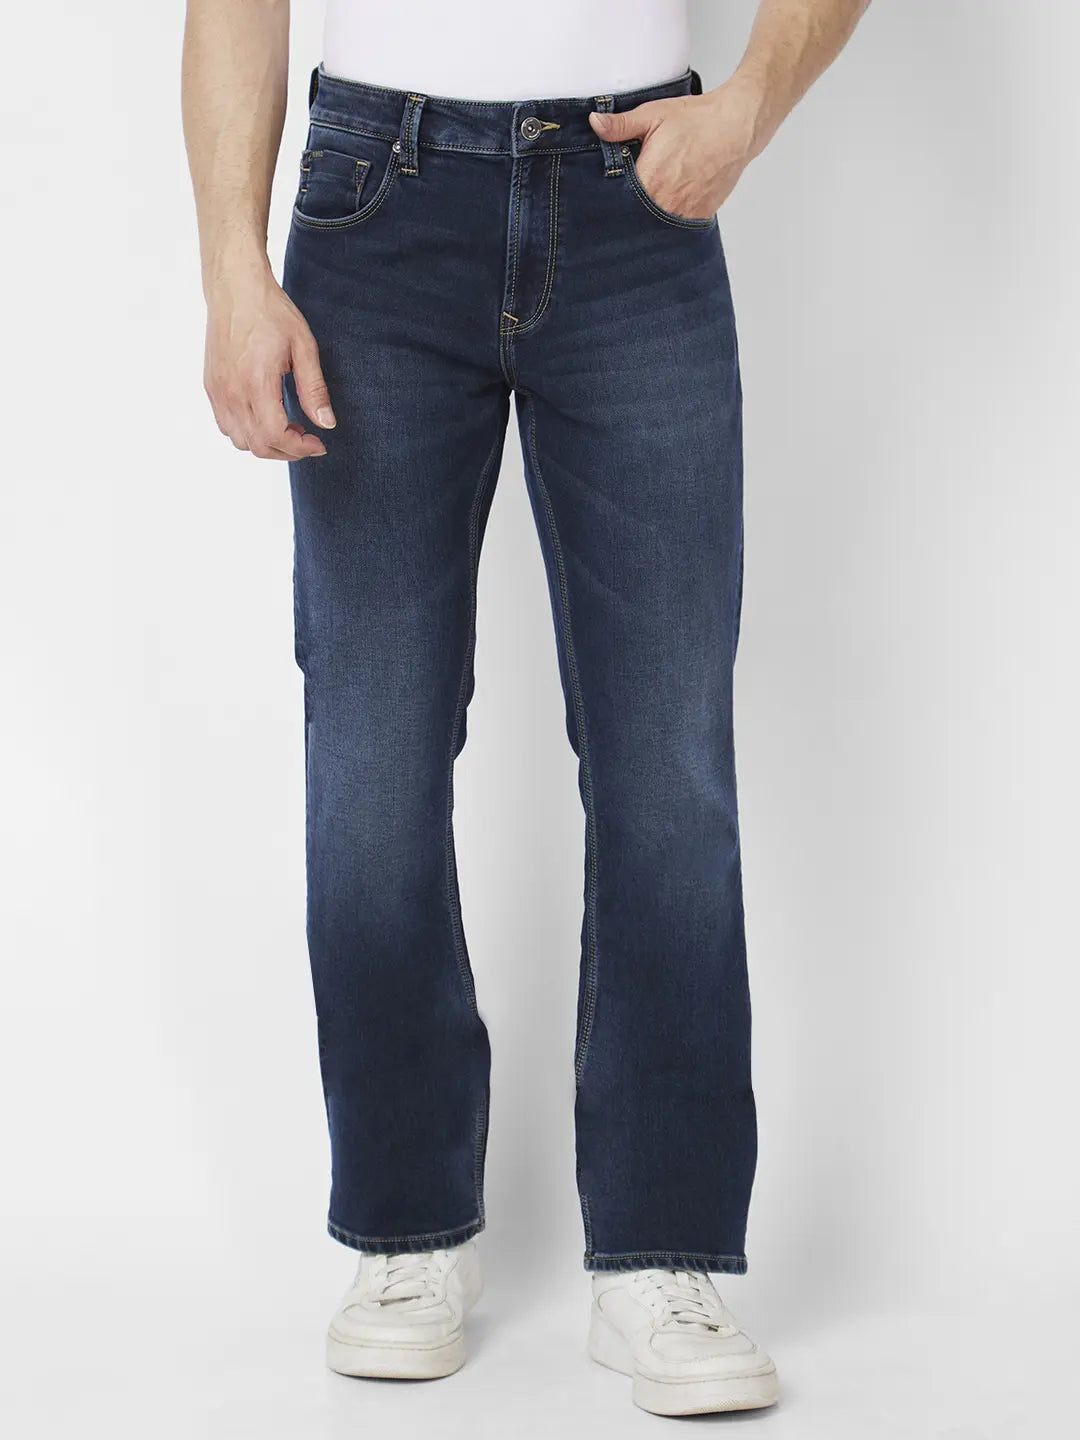 Spykar Men Light Blue Cotton Slim Fit Regular Length Jeans (Skinny ) -  mdskn1bc019lightblue